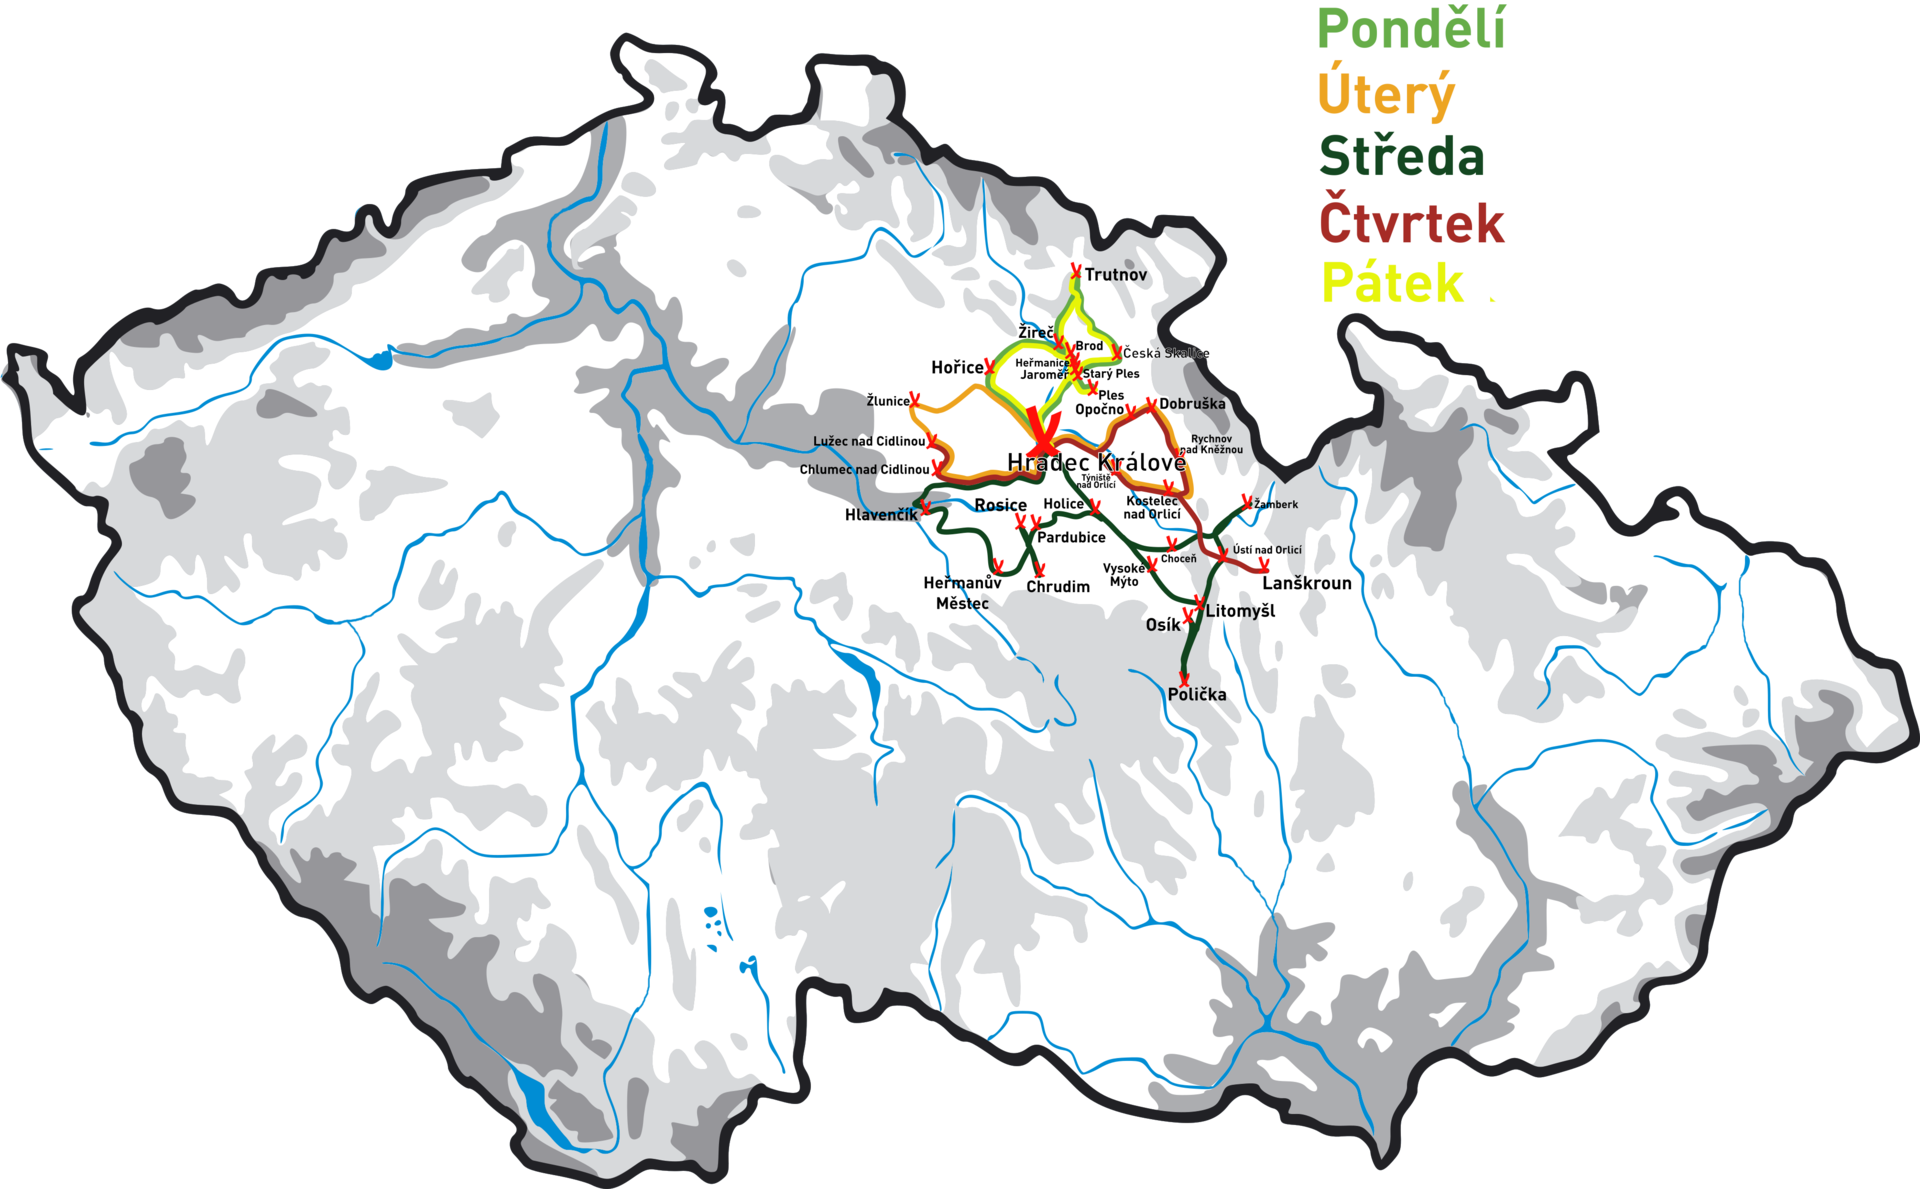 Hradec Kralove line 2